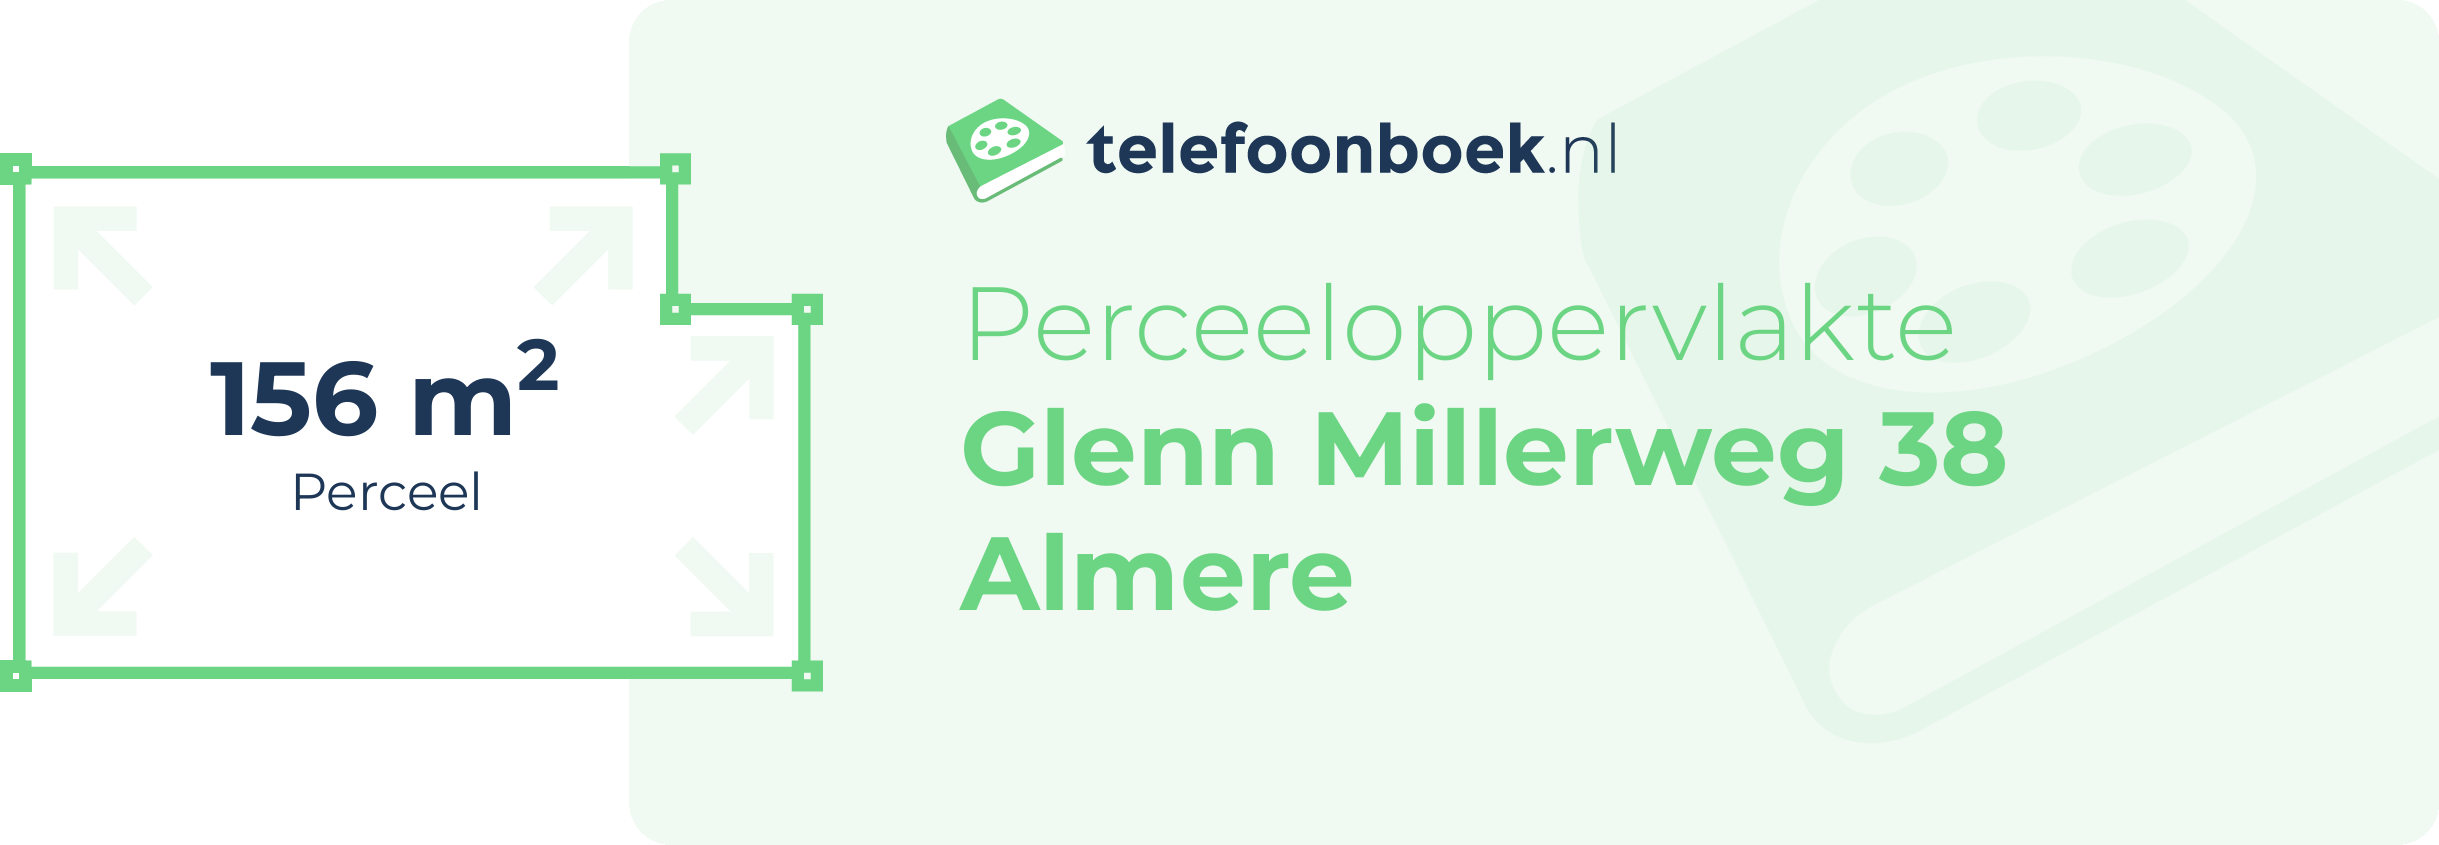 Perceeloppervlakte Glenn Millerweg 38 Almere